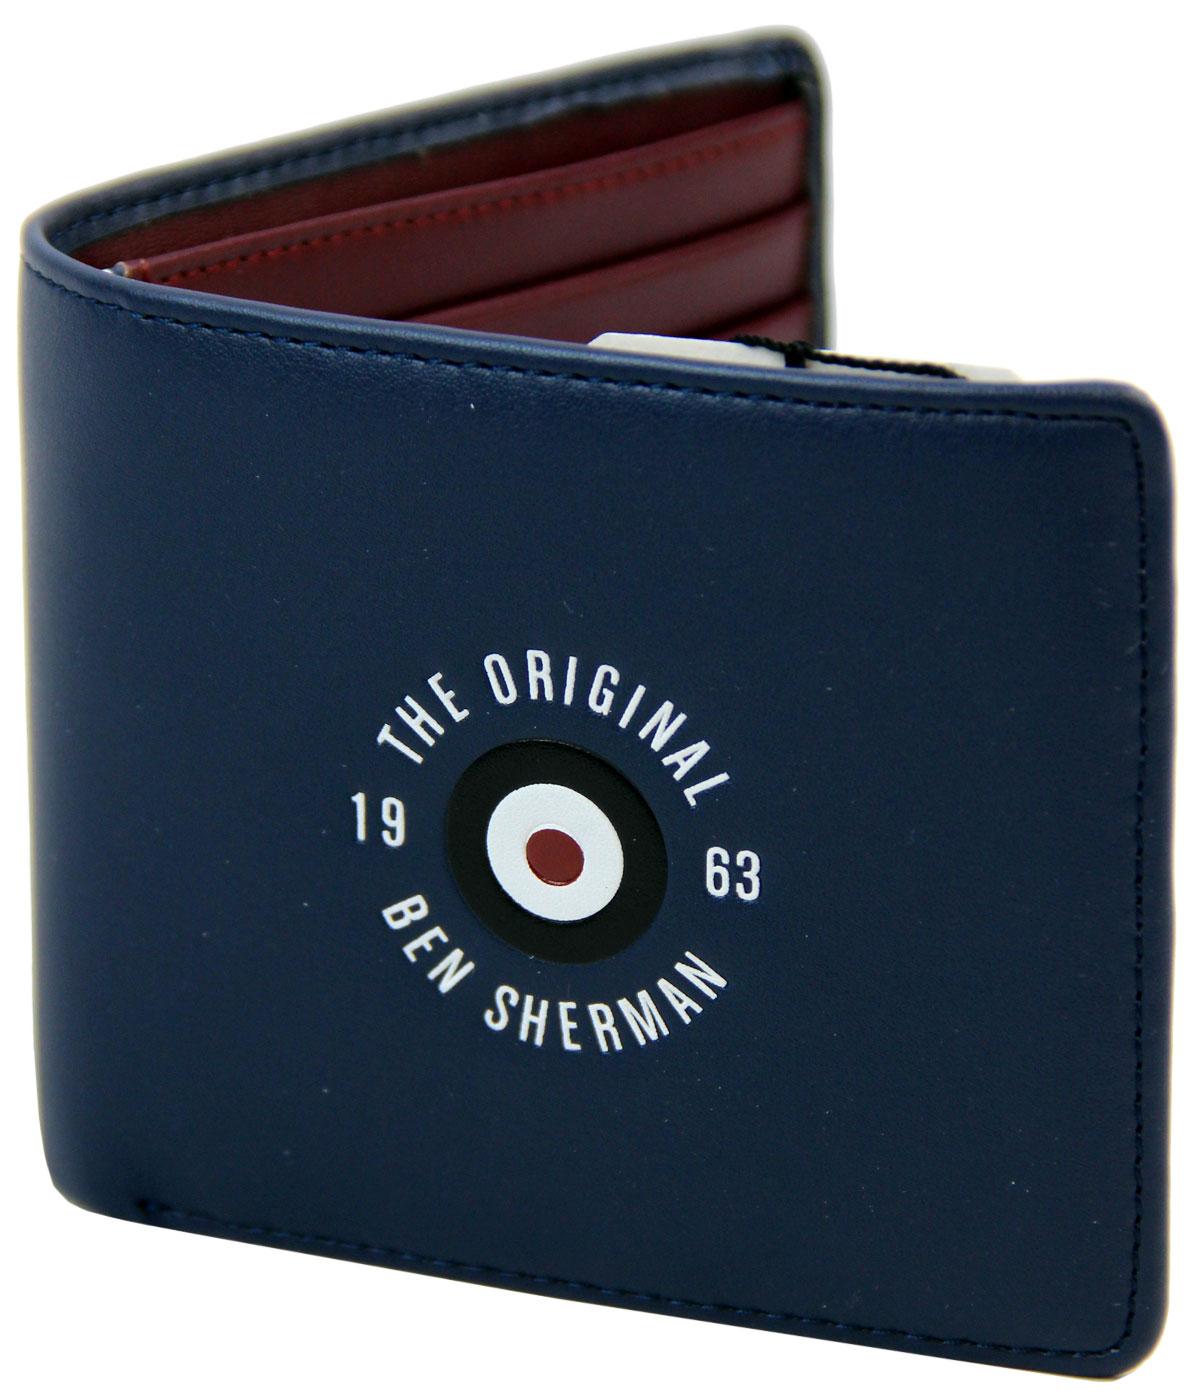 BEN SHERMAN Original Mod Target Billfold Wallet